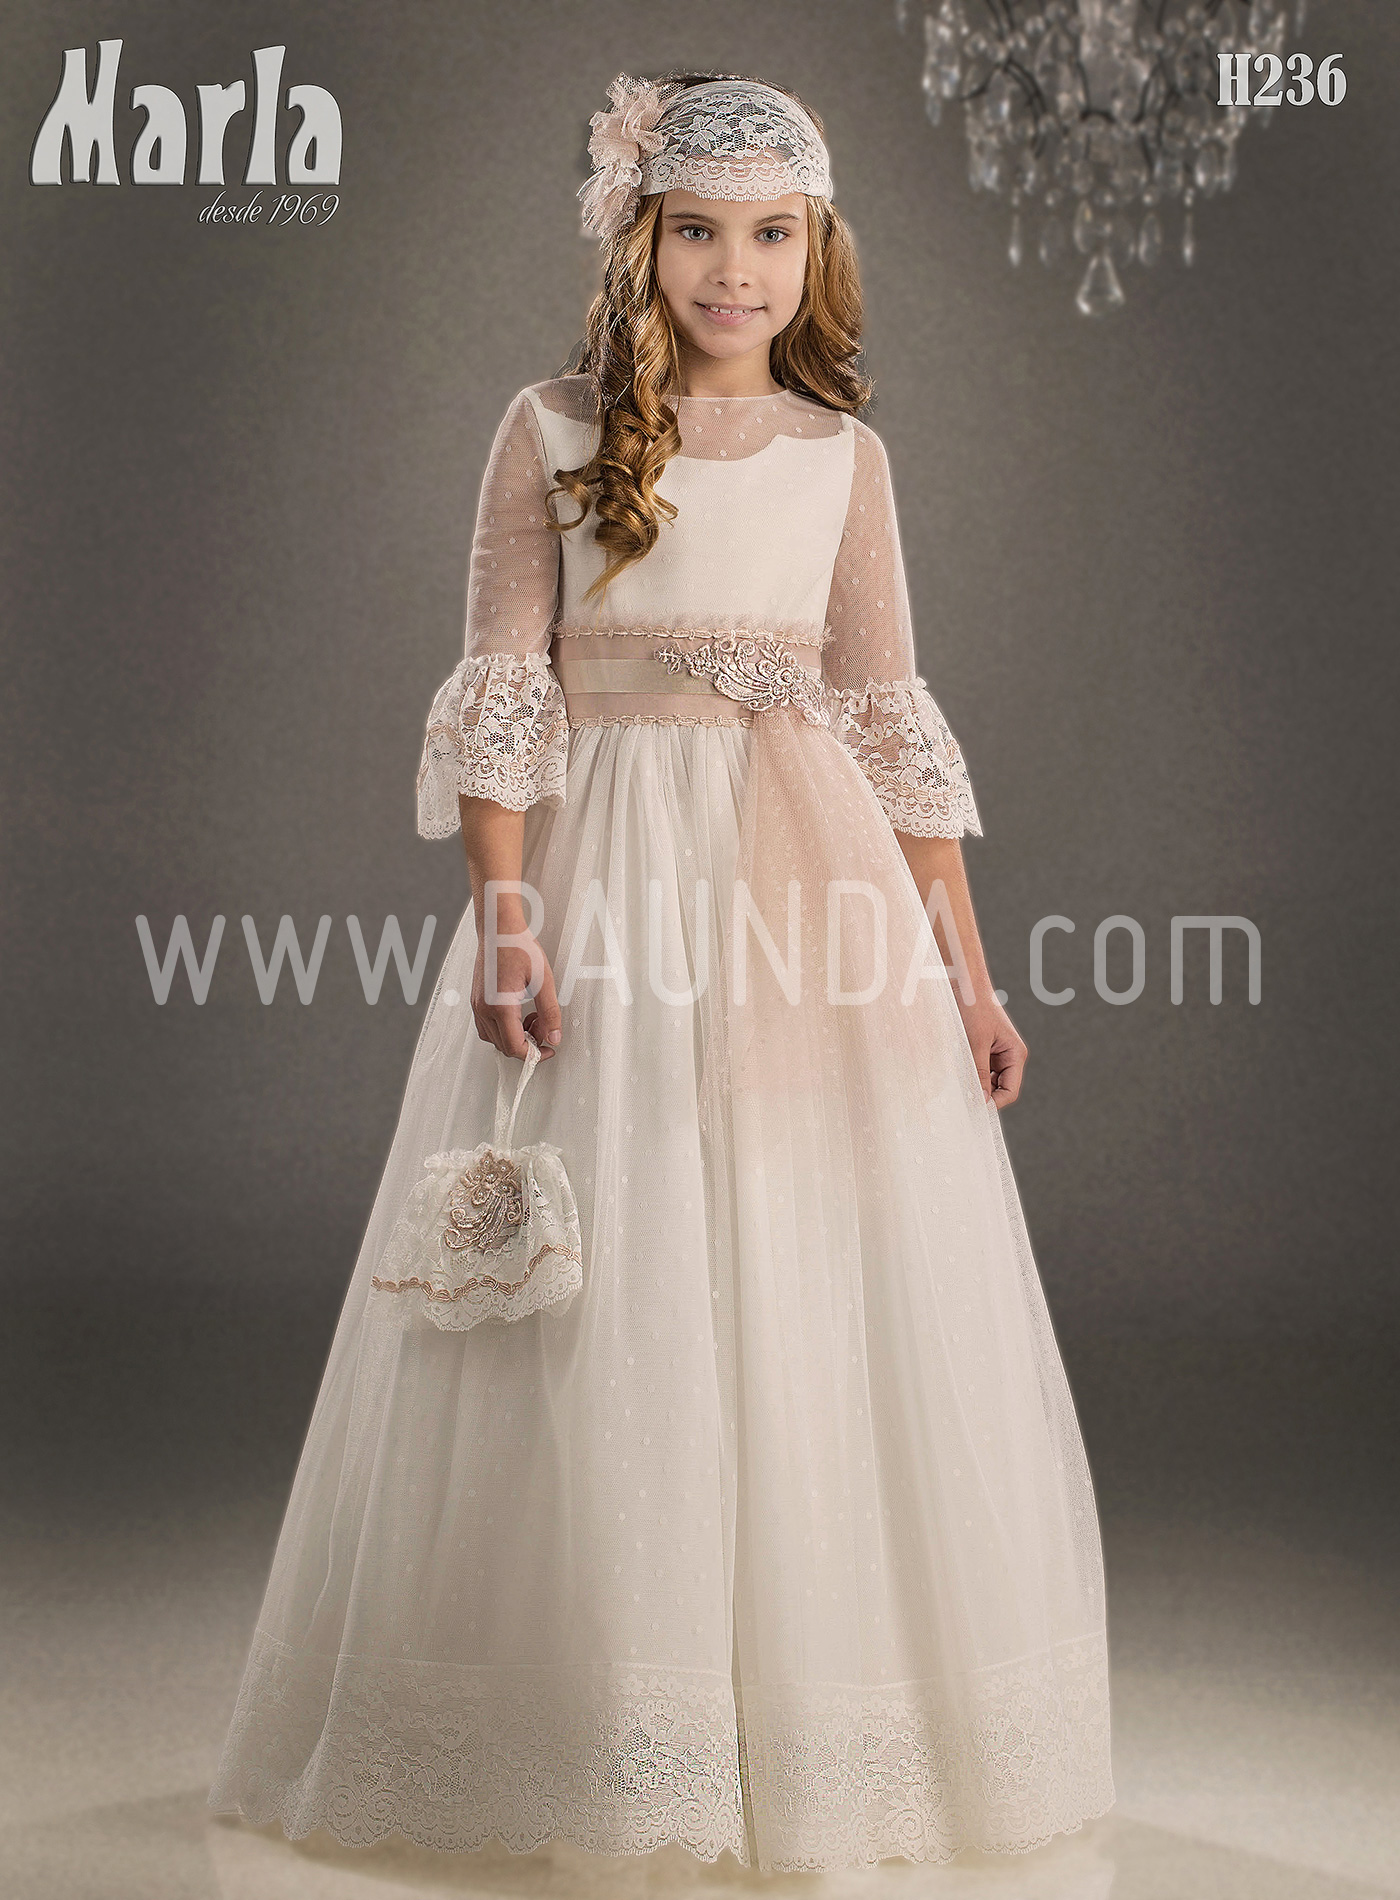 Vestido de comunión bohemio Marla H236 en Madrid y tienda online